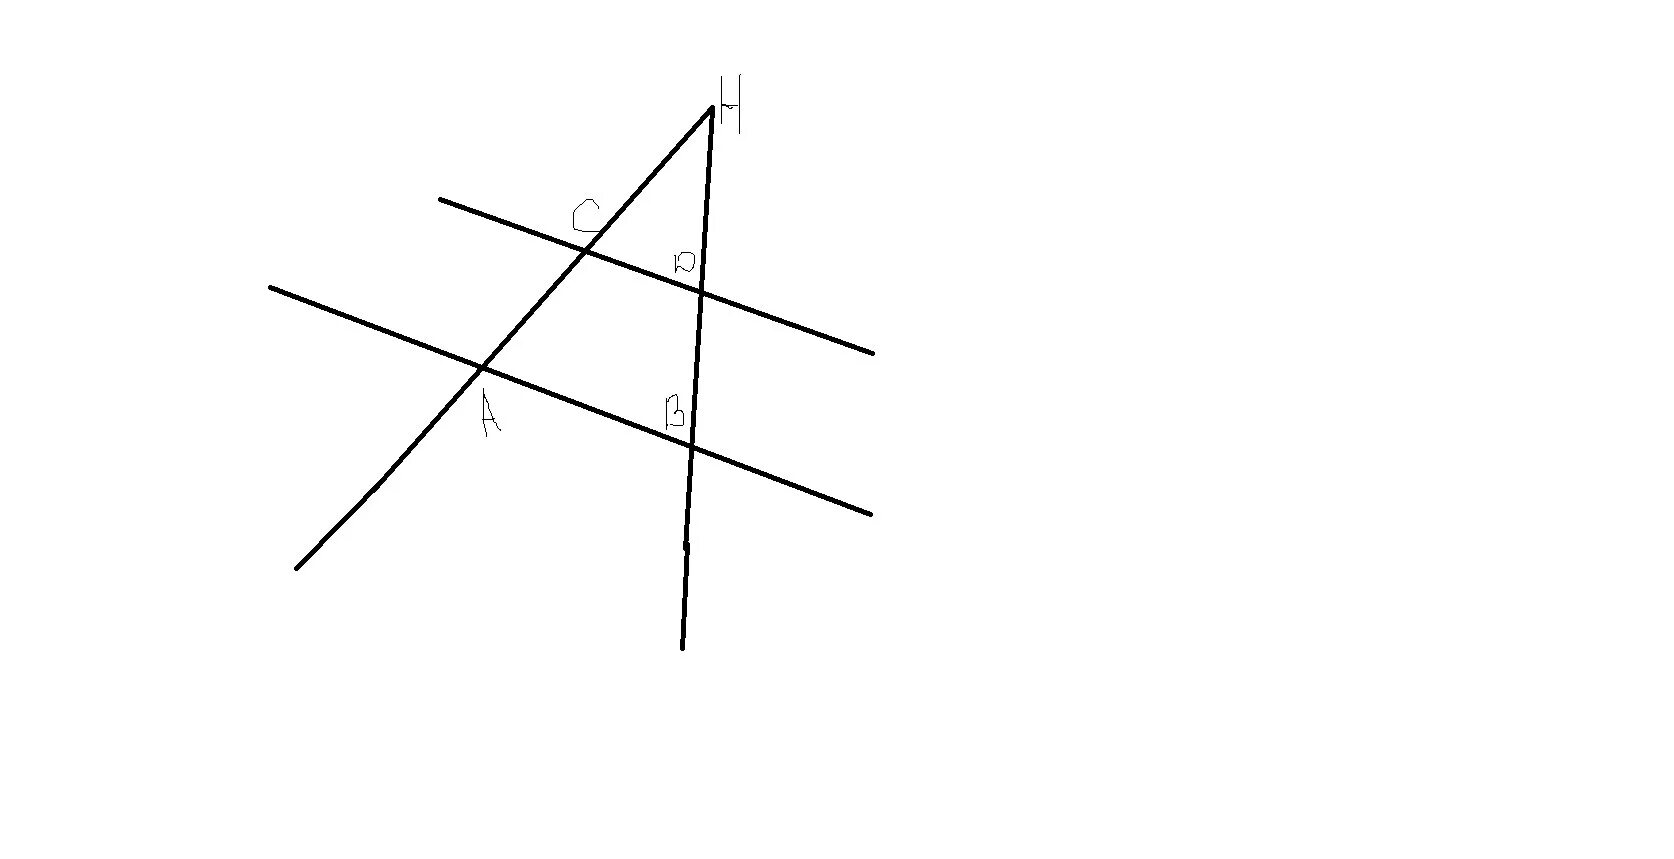 H 1 прямой. Прямые пересекаются в точке параллельны. Прямые параллельные сторонам угла. Пять попарно пересекающихся прямых. Четыре прямые пересекаются в трех точках.